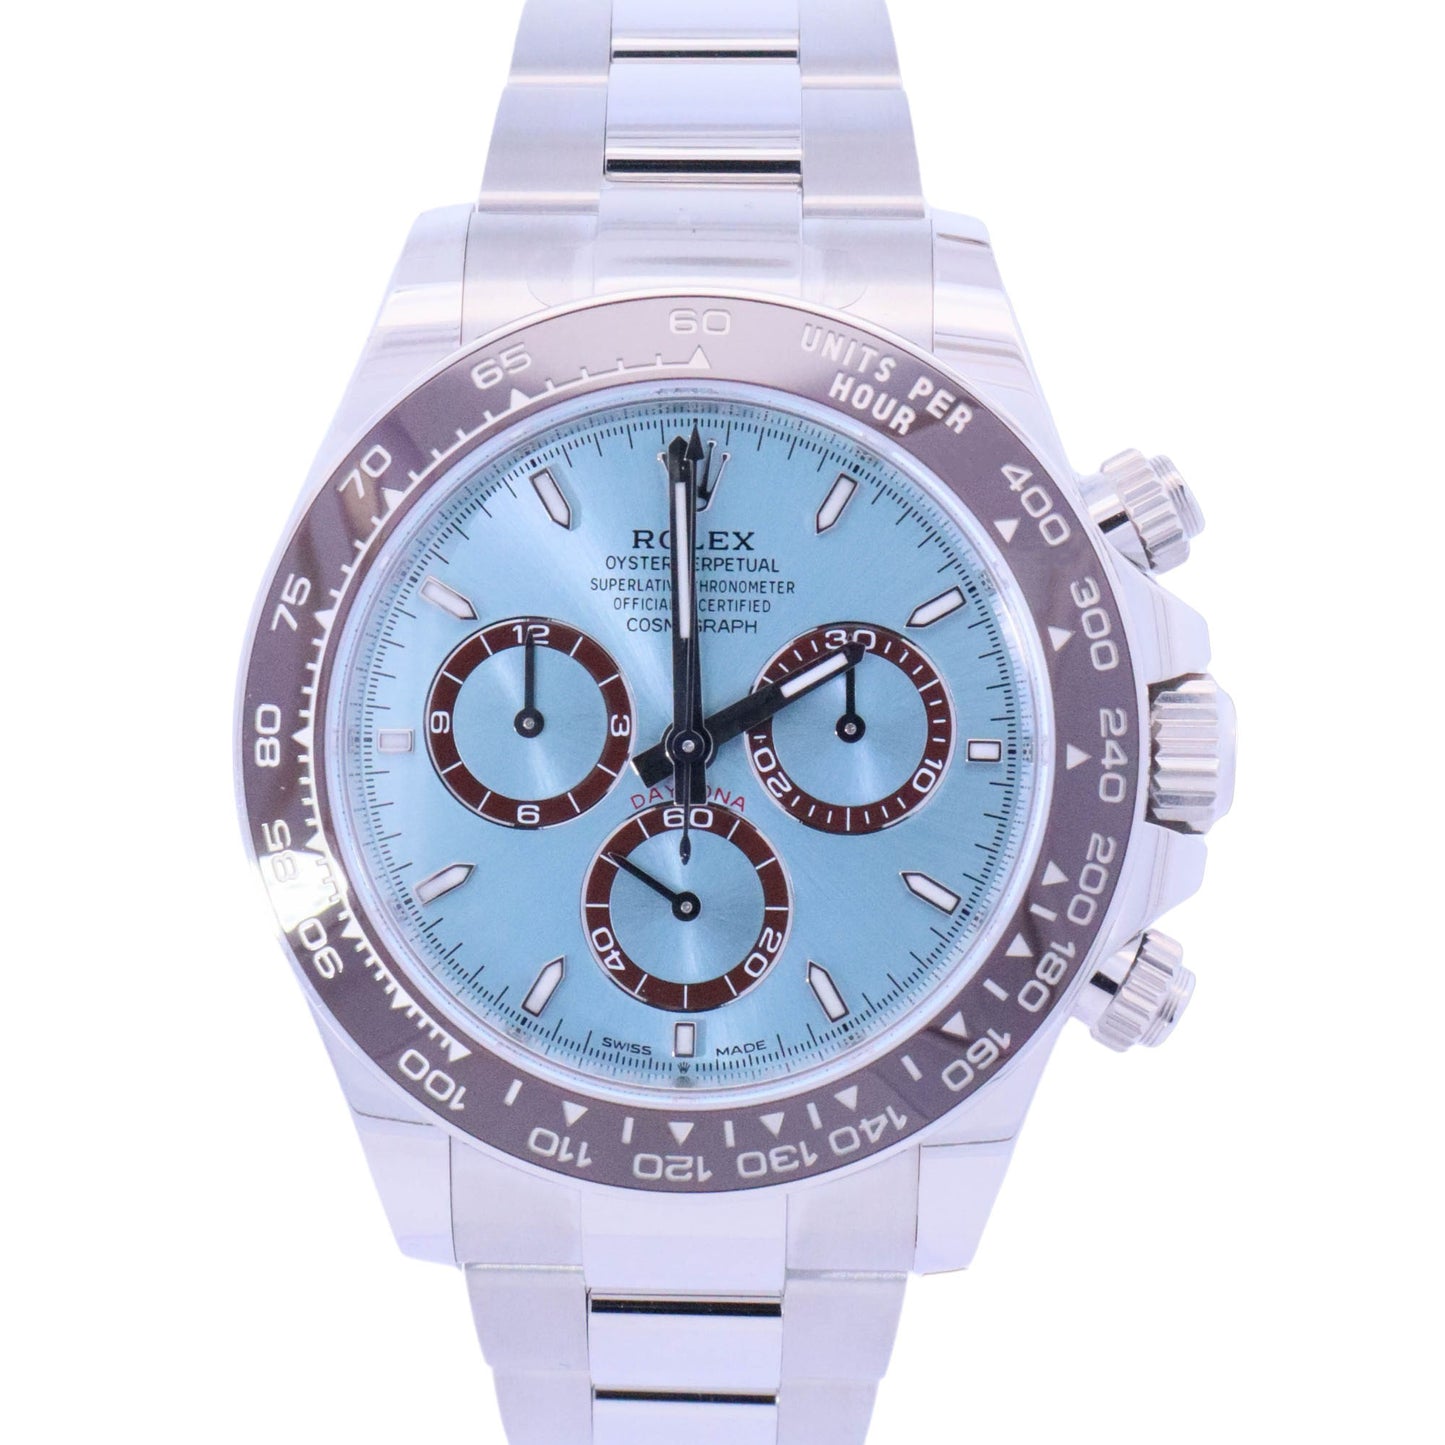 Rolex Daytona 40mm Platinum Ice Blue Chronograph Dial Watch Reference# 126506 - Happy Jewelers Fine Jewelry Lifetime Warranty